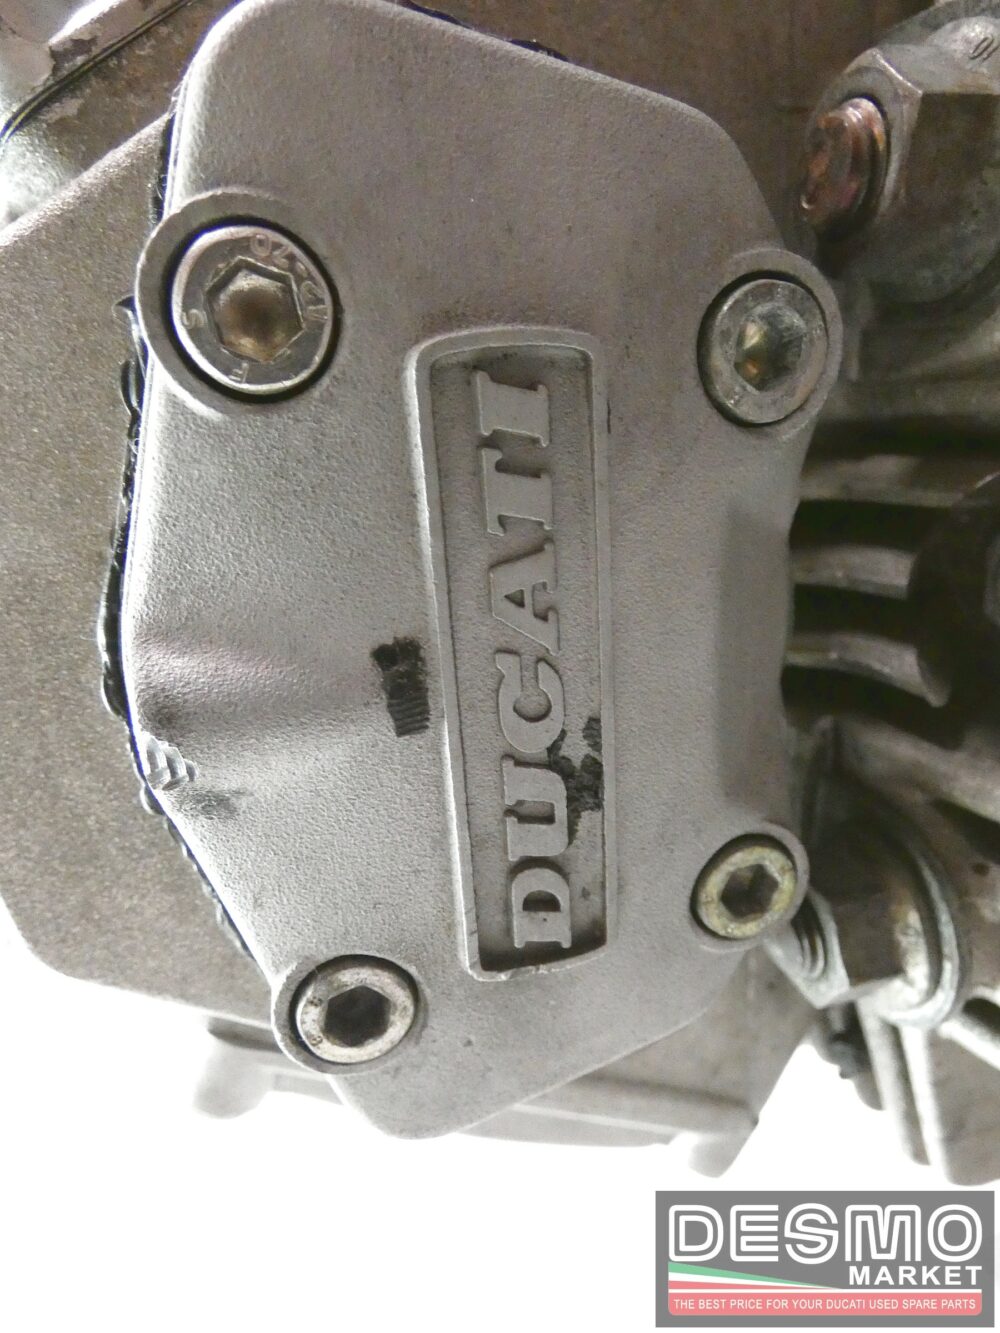 Motore Ducati supertwin 2 valvole